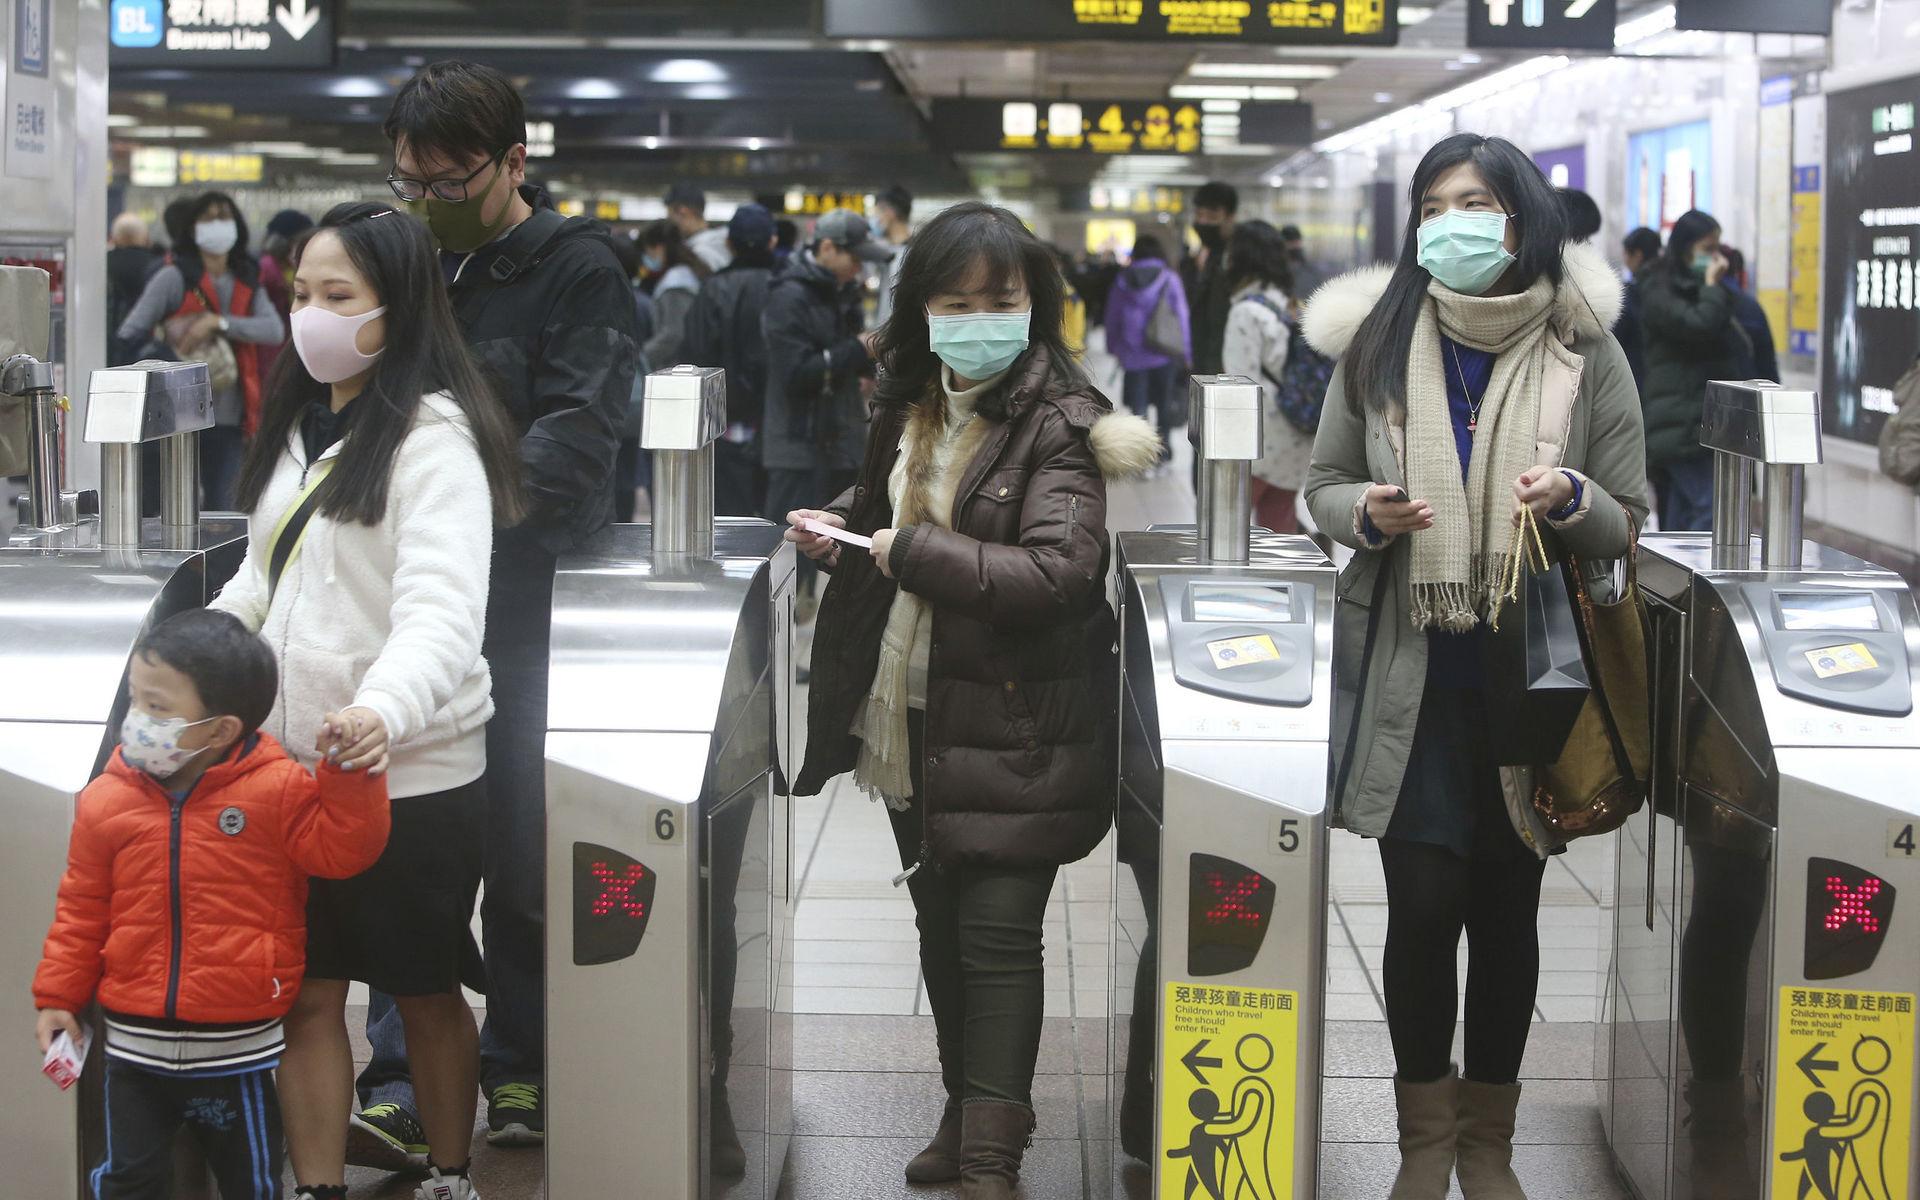 Medborgare i både Kina och andra länder, som här i Taiwan, uppmanas att bära munskydd för att skydda sig mot viruset.